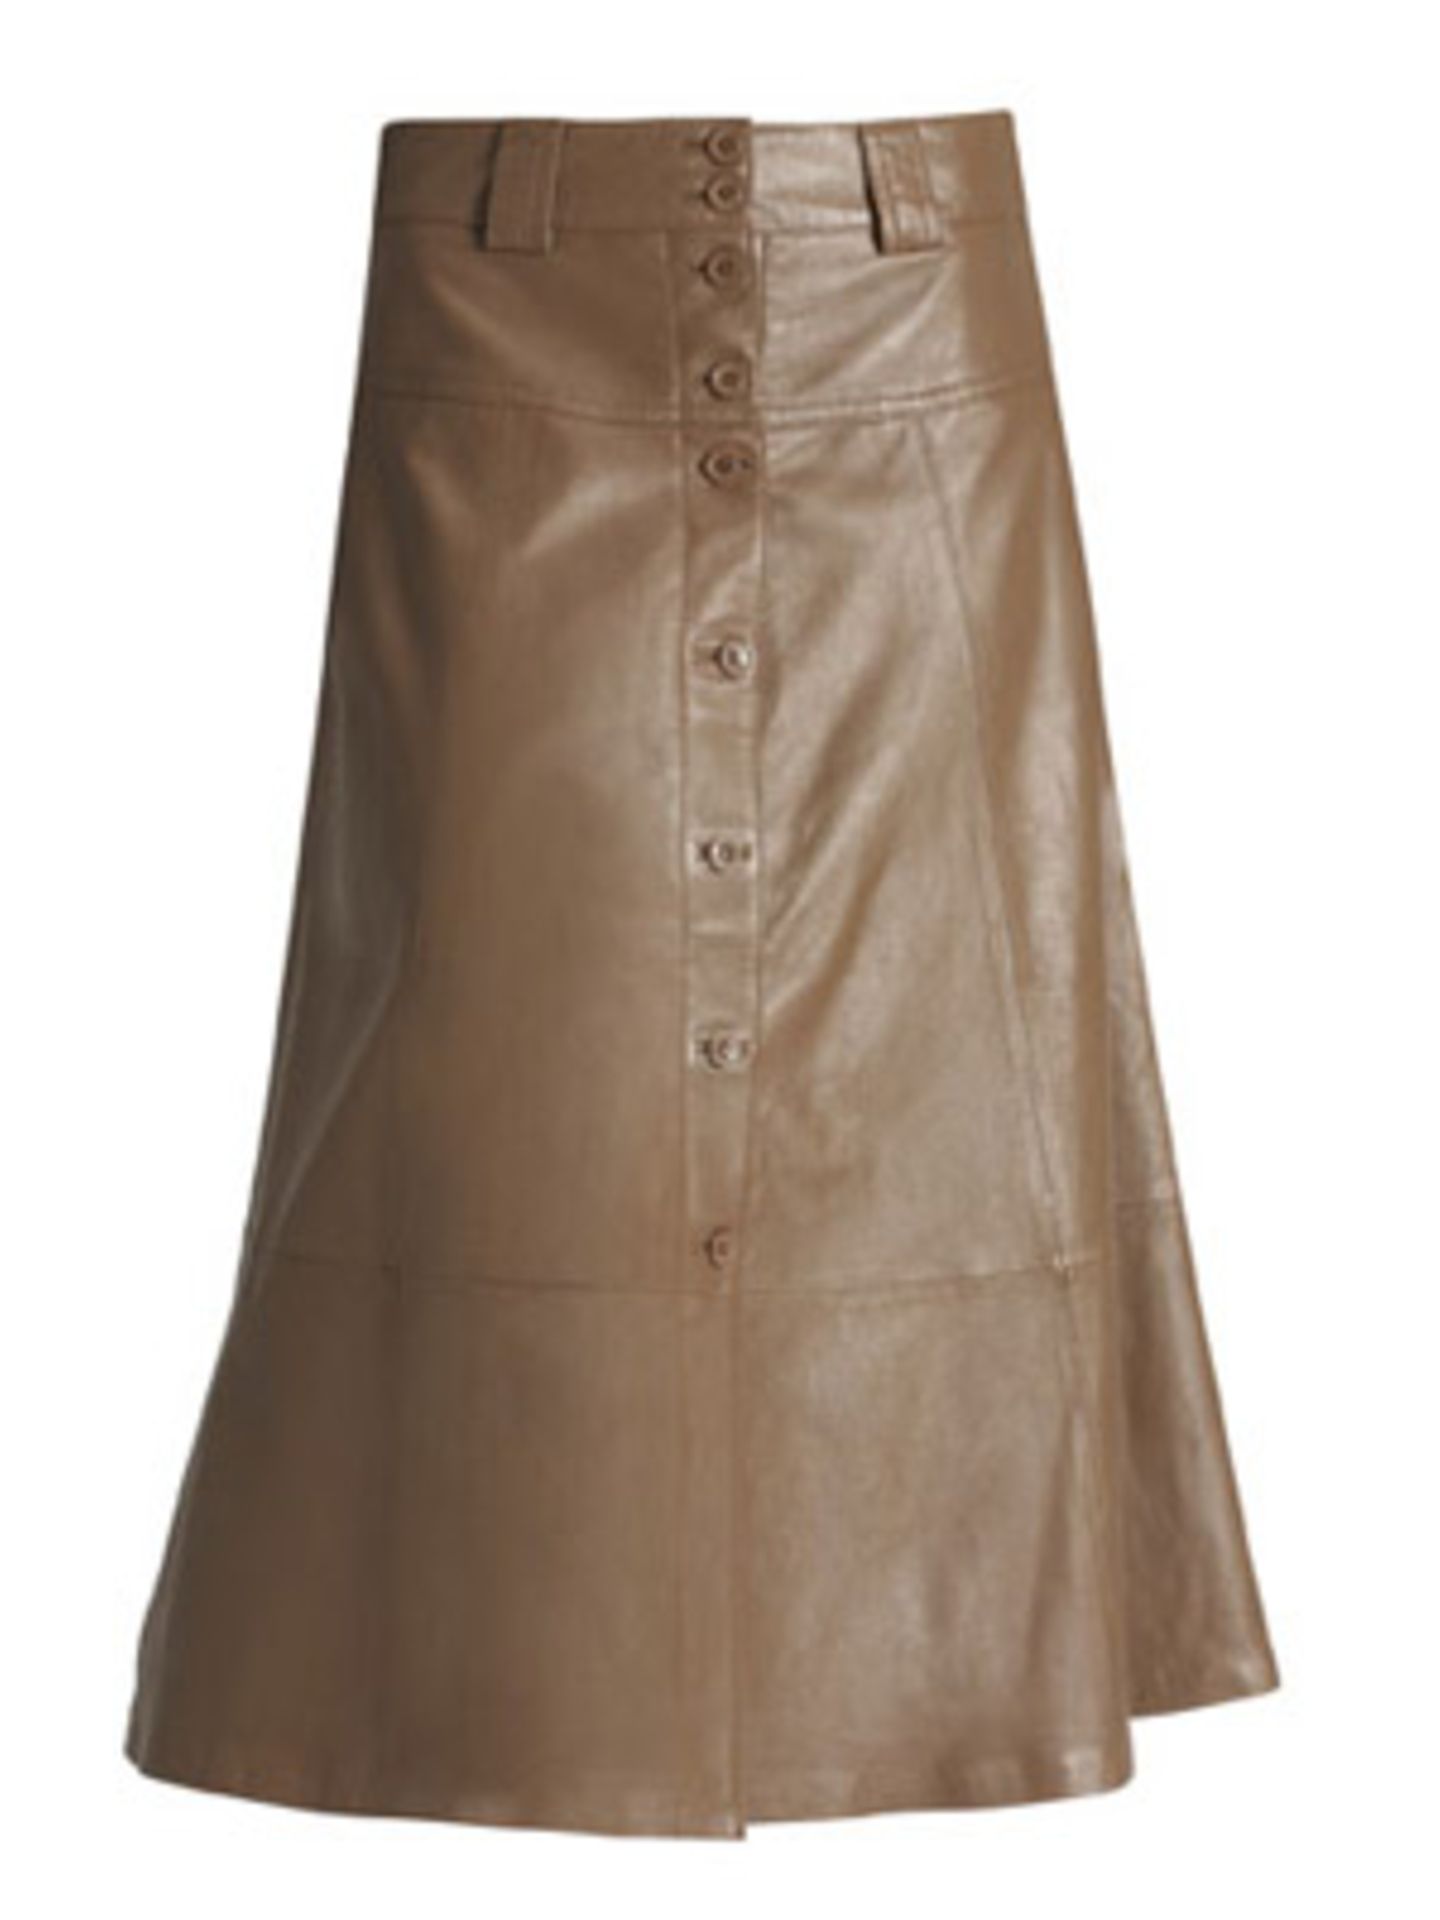 Knöchellanger, leicht ausgesteller Lederrock in hellem Braun mit Knöpfen von H&M, um 100 Euro.